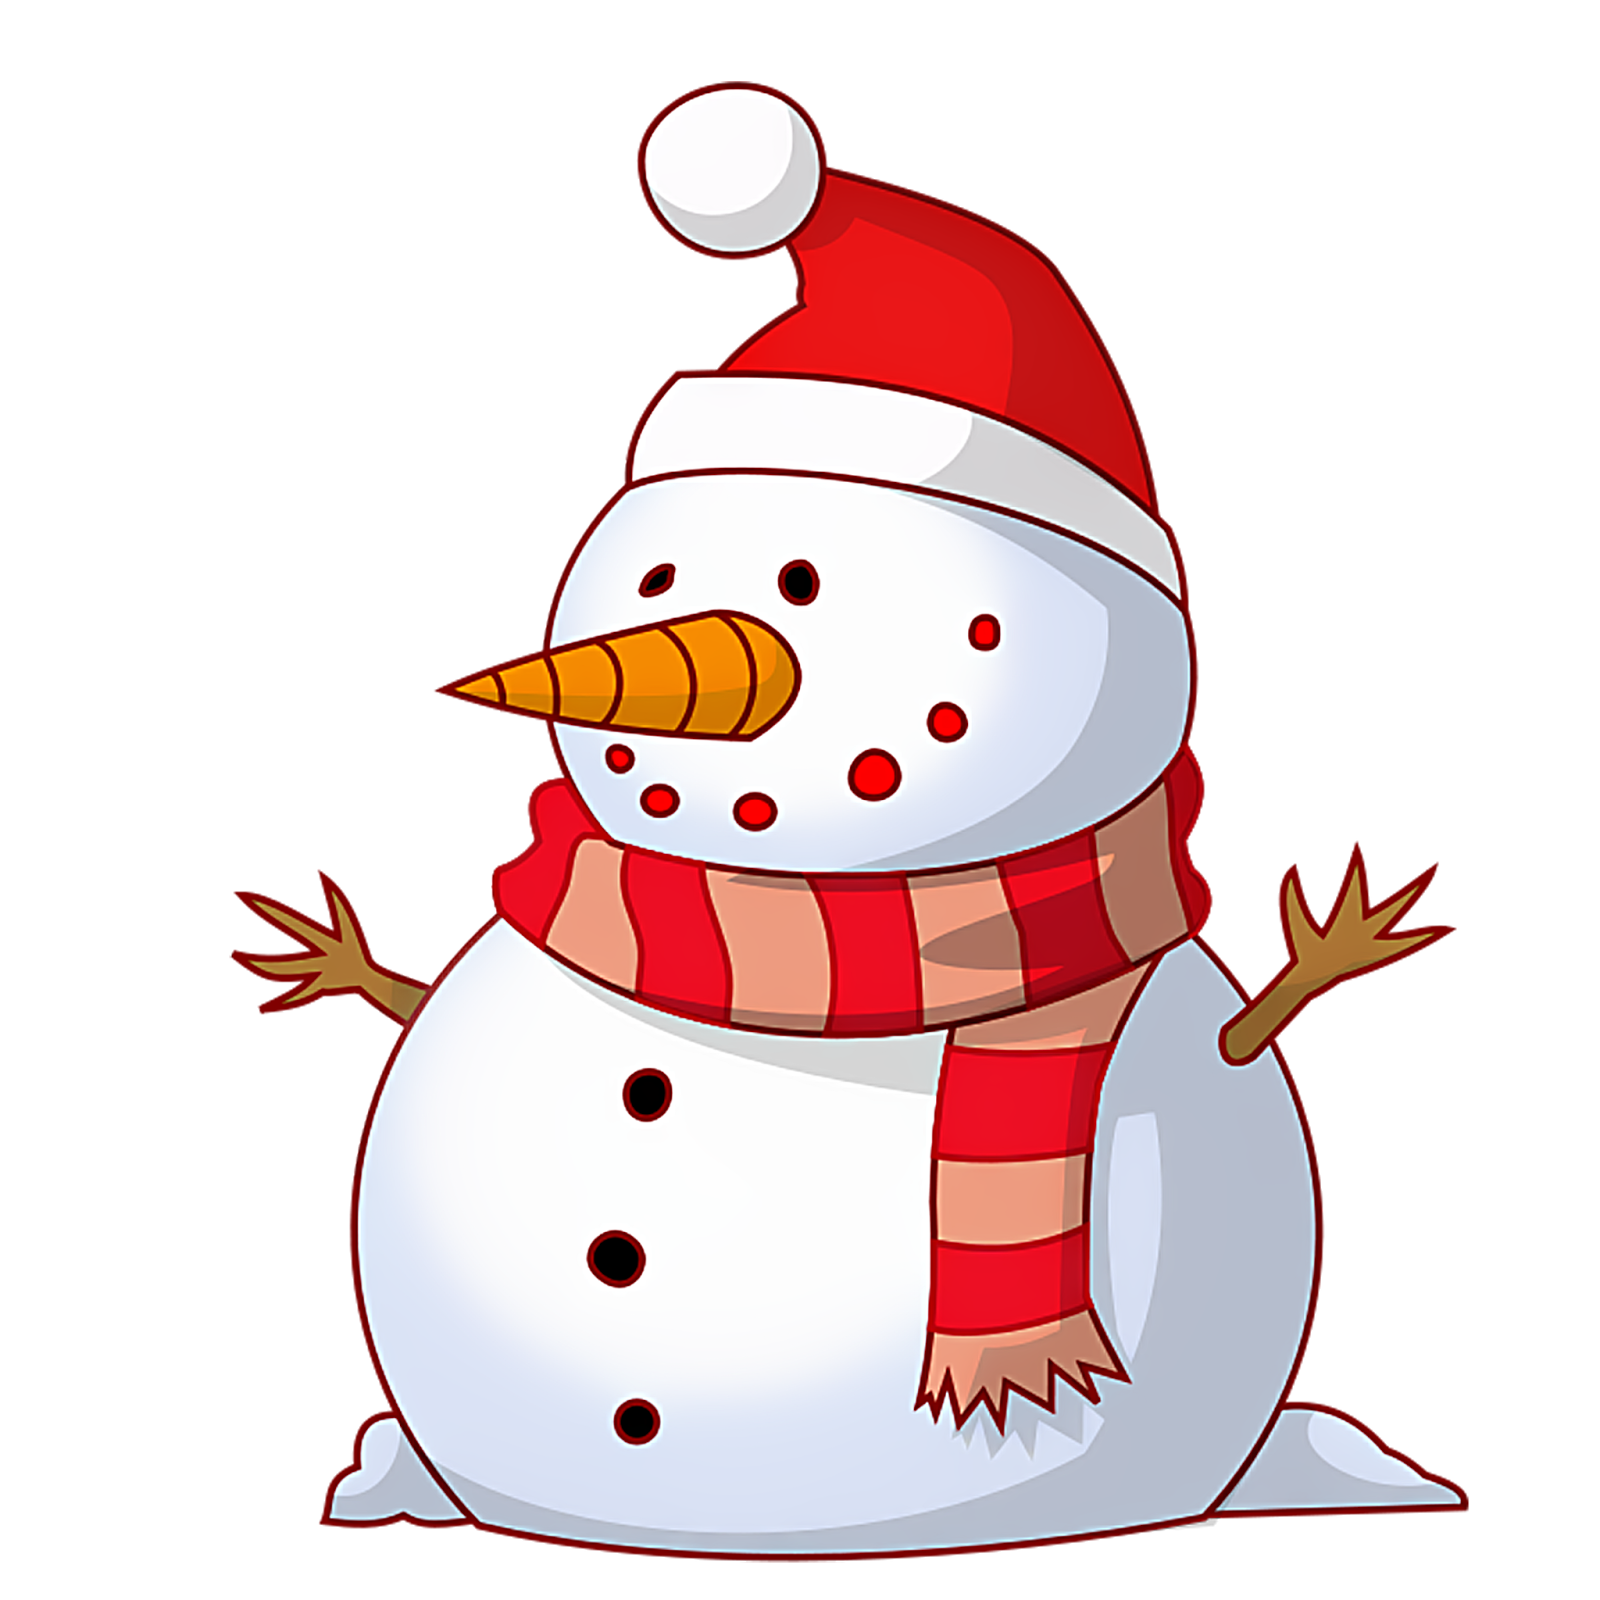 Vintage Snowman Images | Free Download Clip Art | Free Clip Art ...